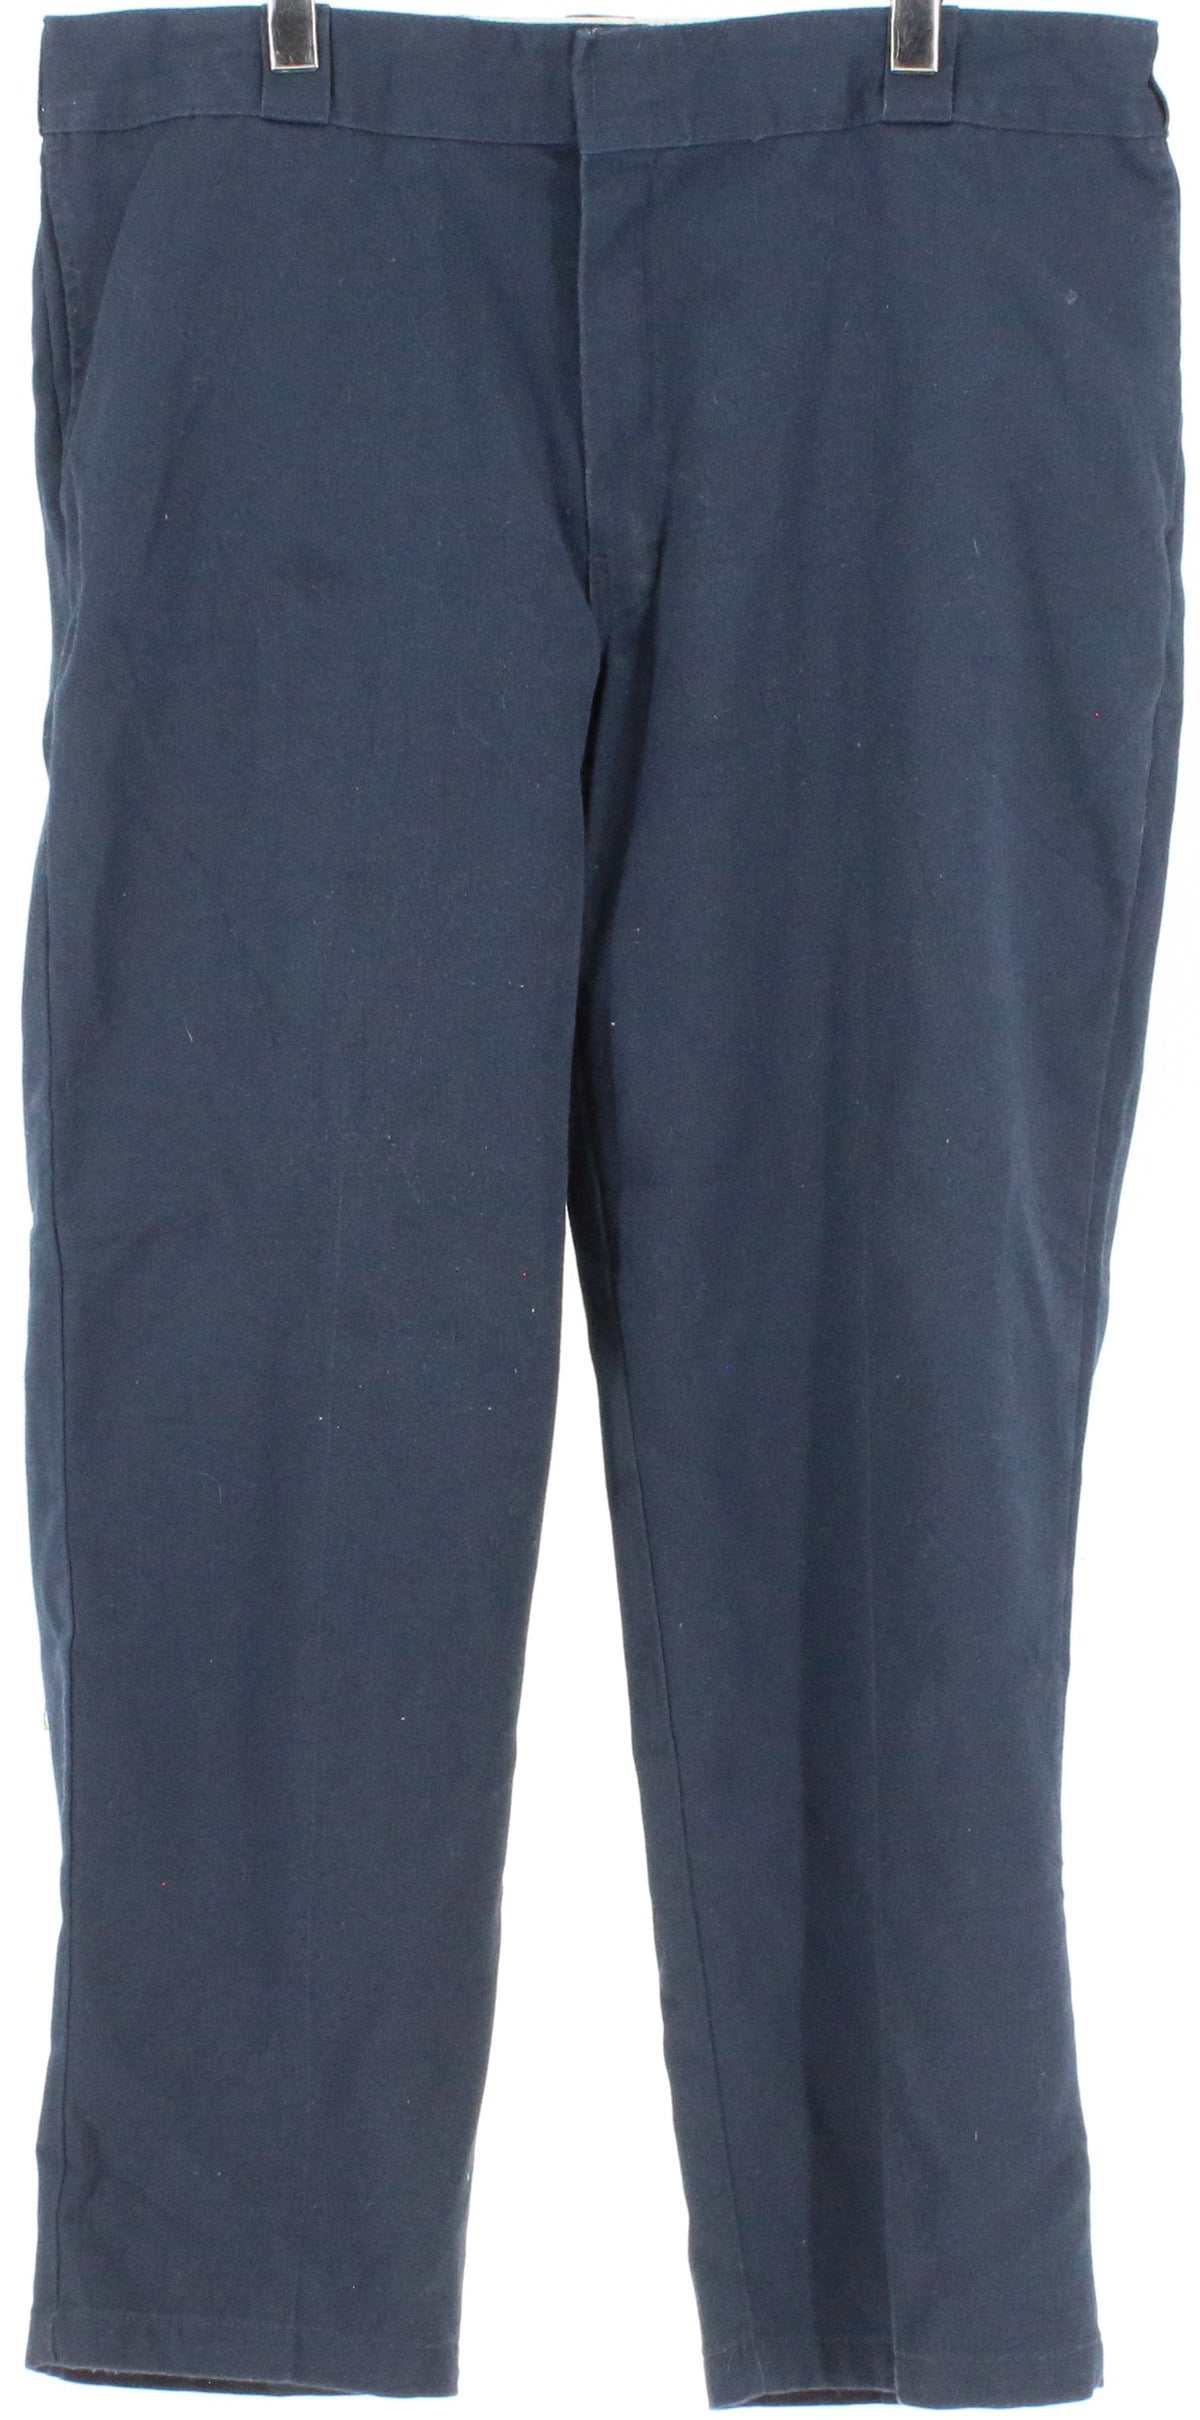 Dickies 874 Original Flex Fit Navy Blue Pants